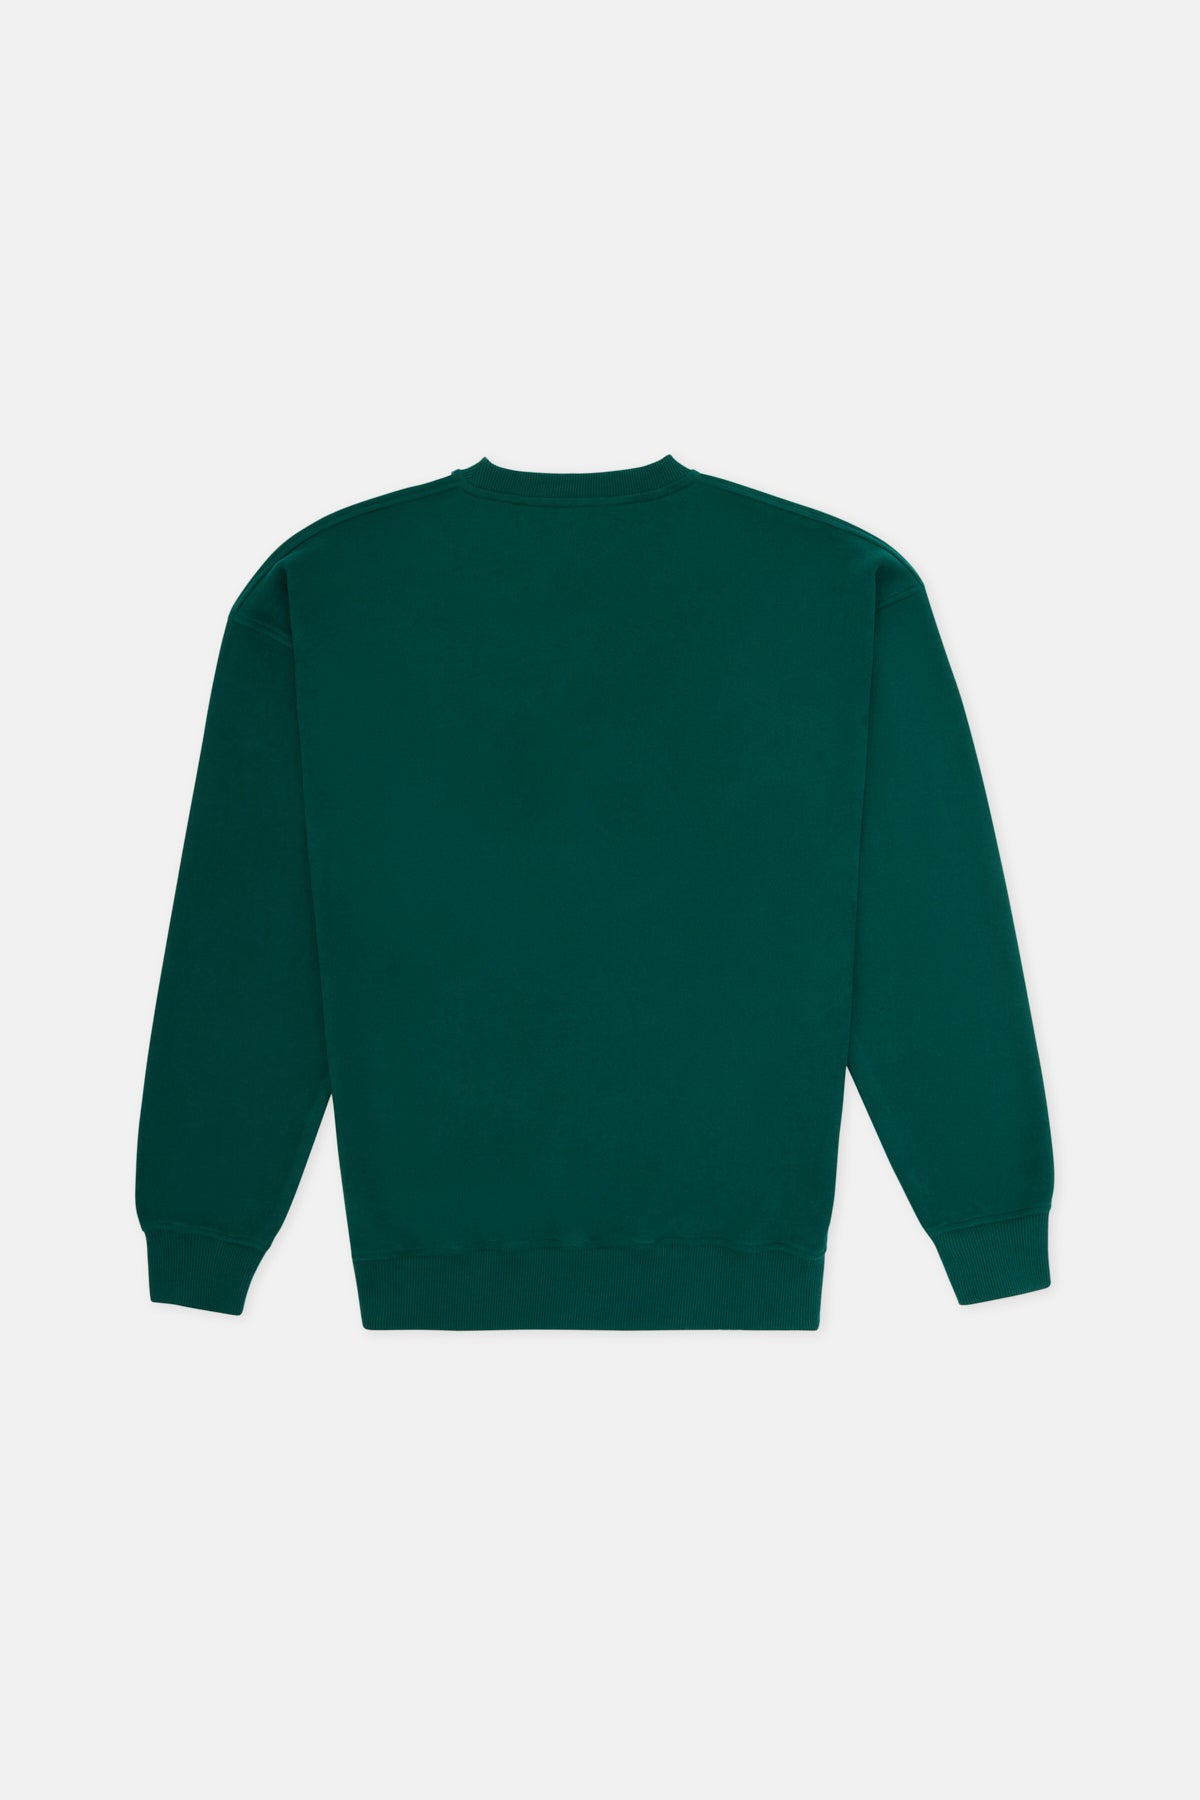 Kutup Ayıları Super Soft Sweatshirt - Koyu Yeşil